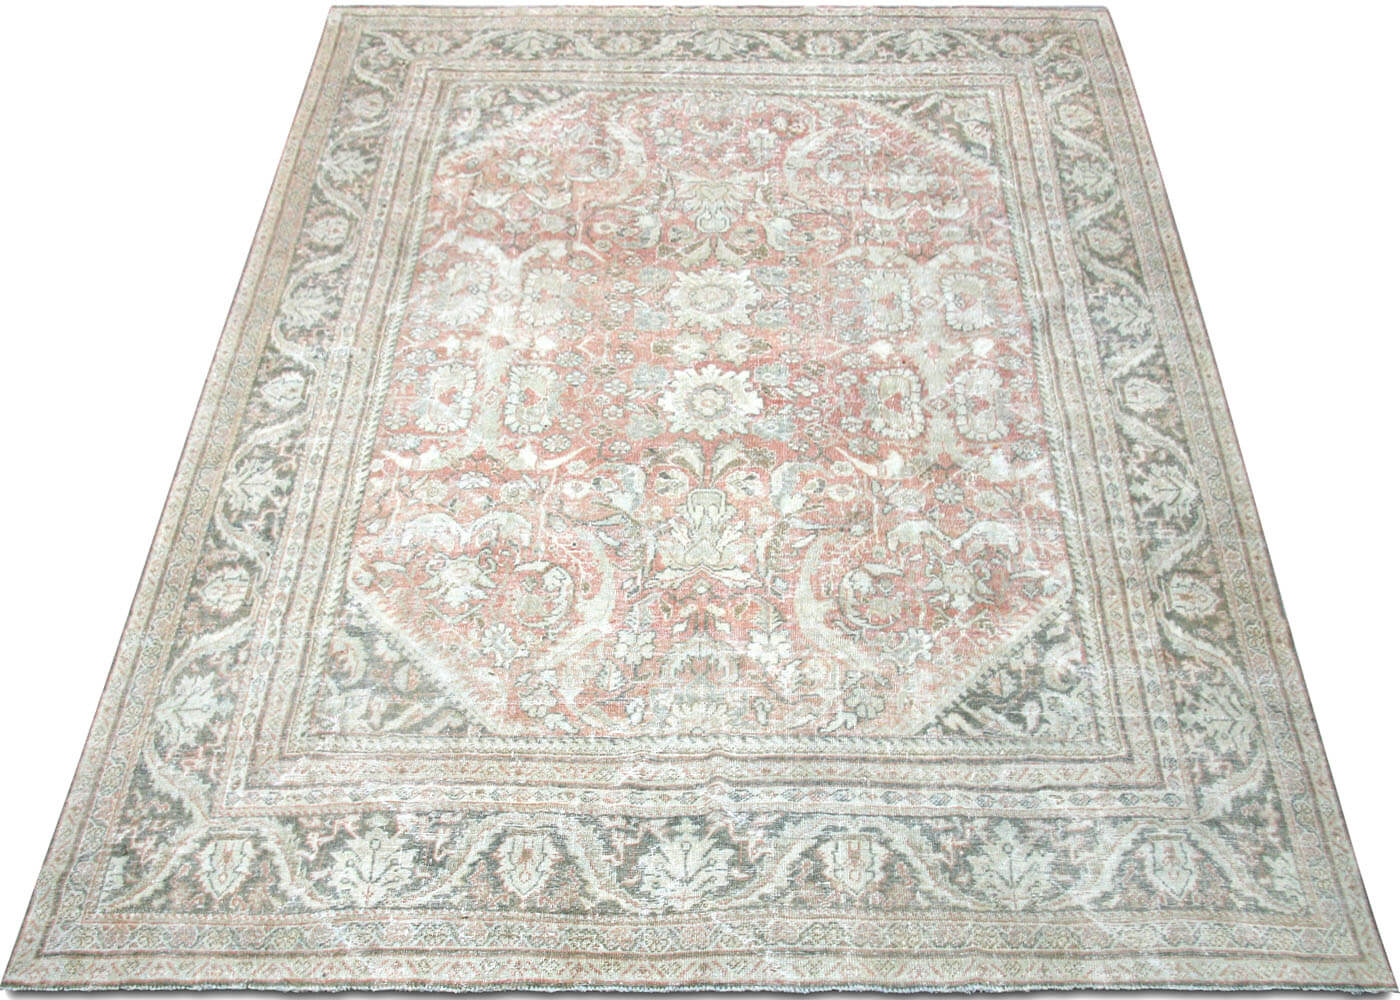 Semi Antique Persian Mahal Rug - 9'2" x 11'6"